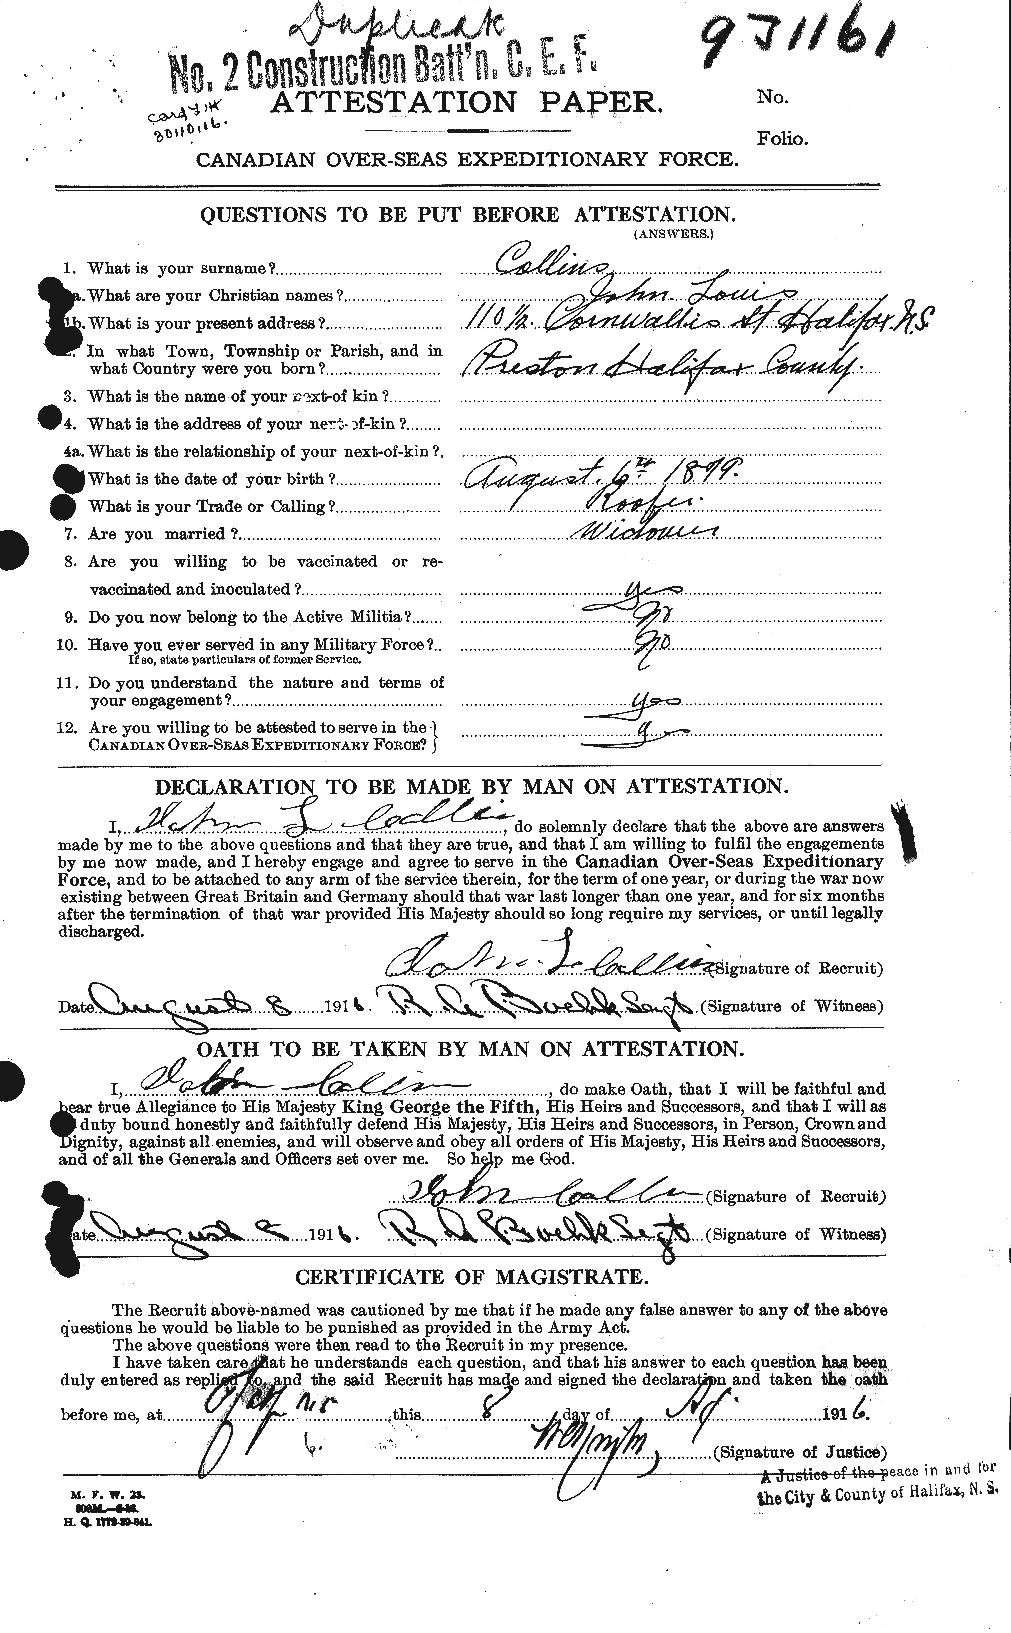 Dossiers du Personnel de la Première Guerre mondiale - CEC 069544a